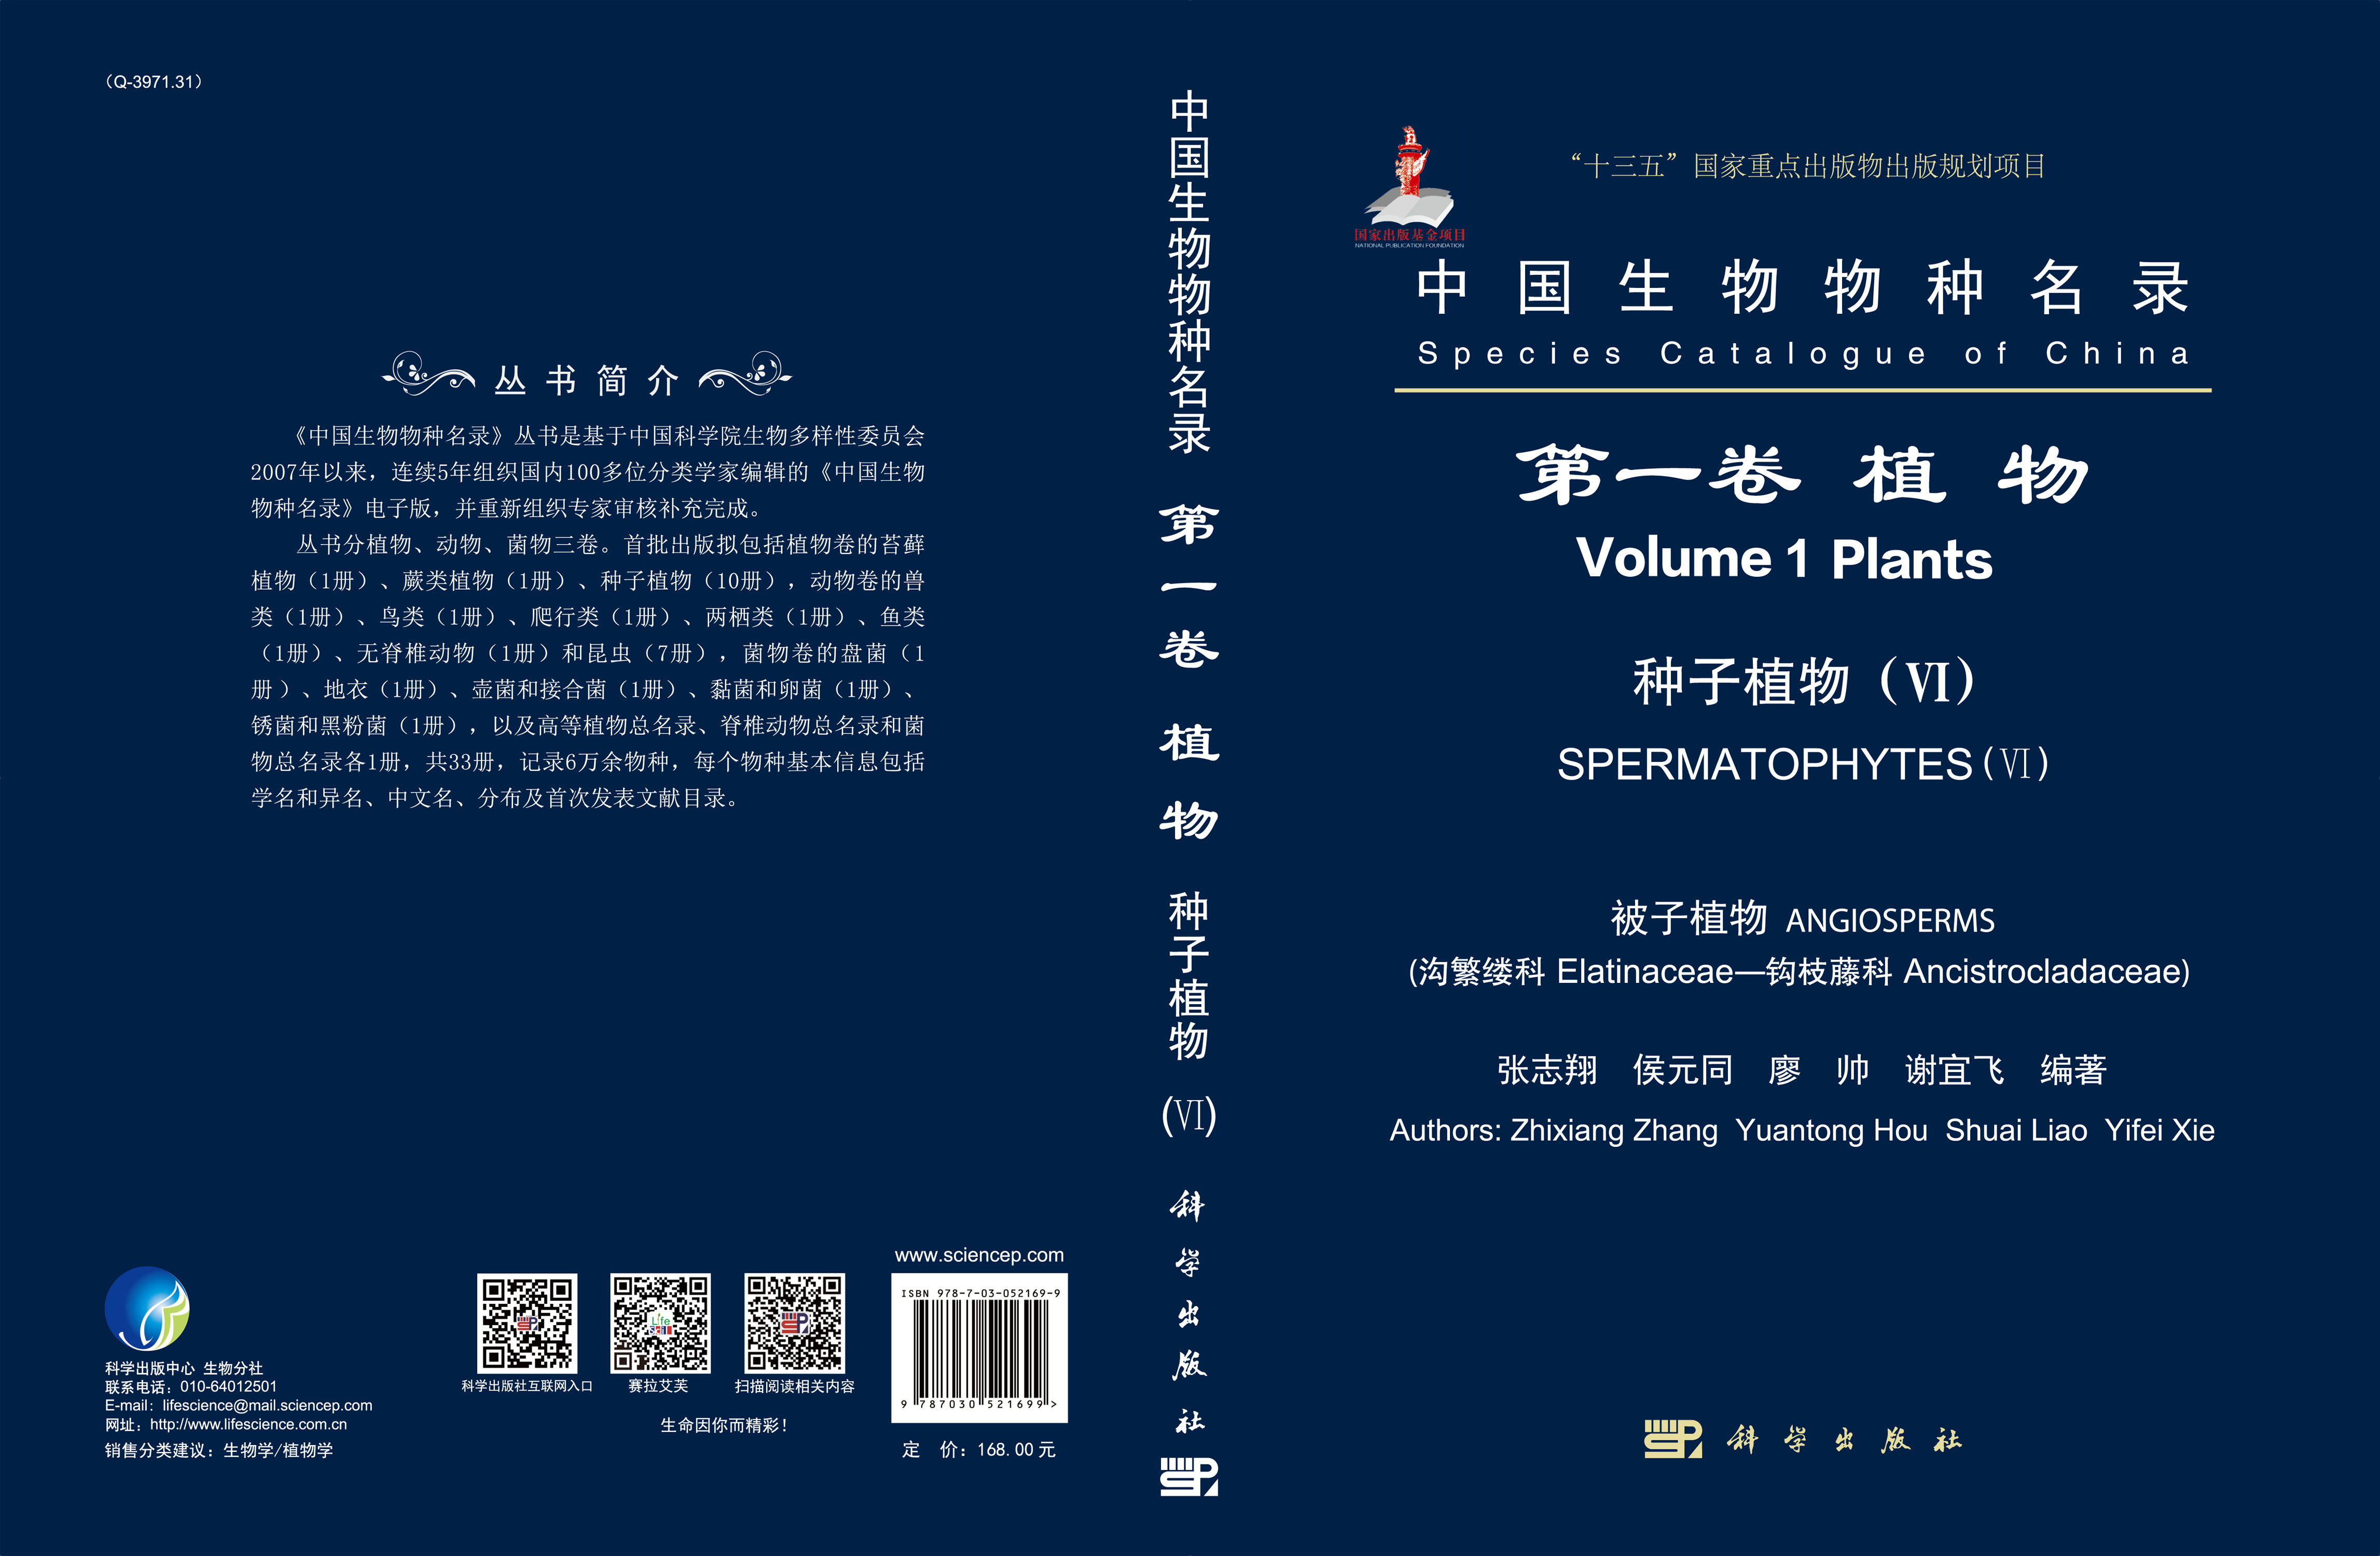 中国生物物种名录 第一卷 植物 种子植物（VI） 被子植物（沟繁缕科—钩枝藤科）